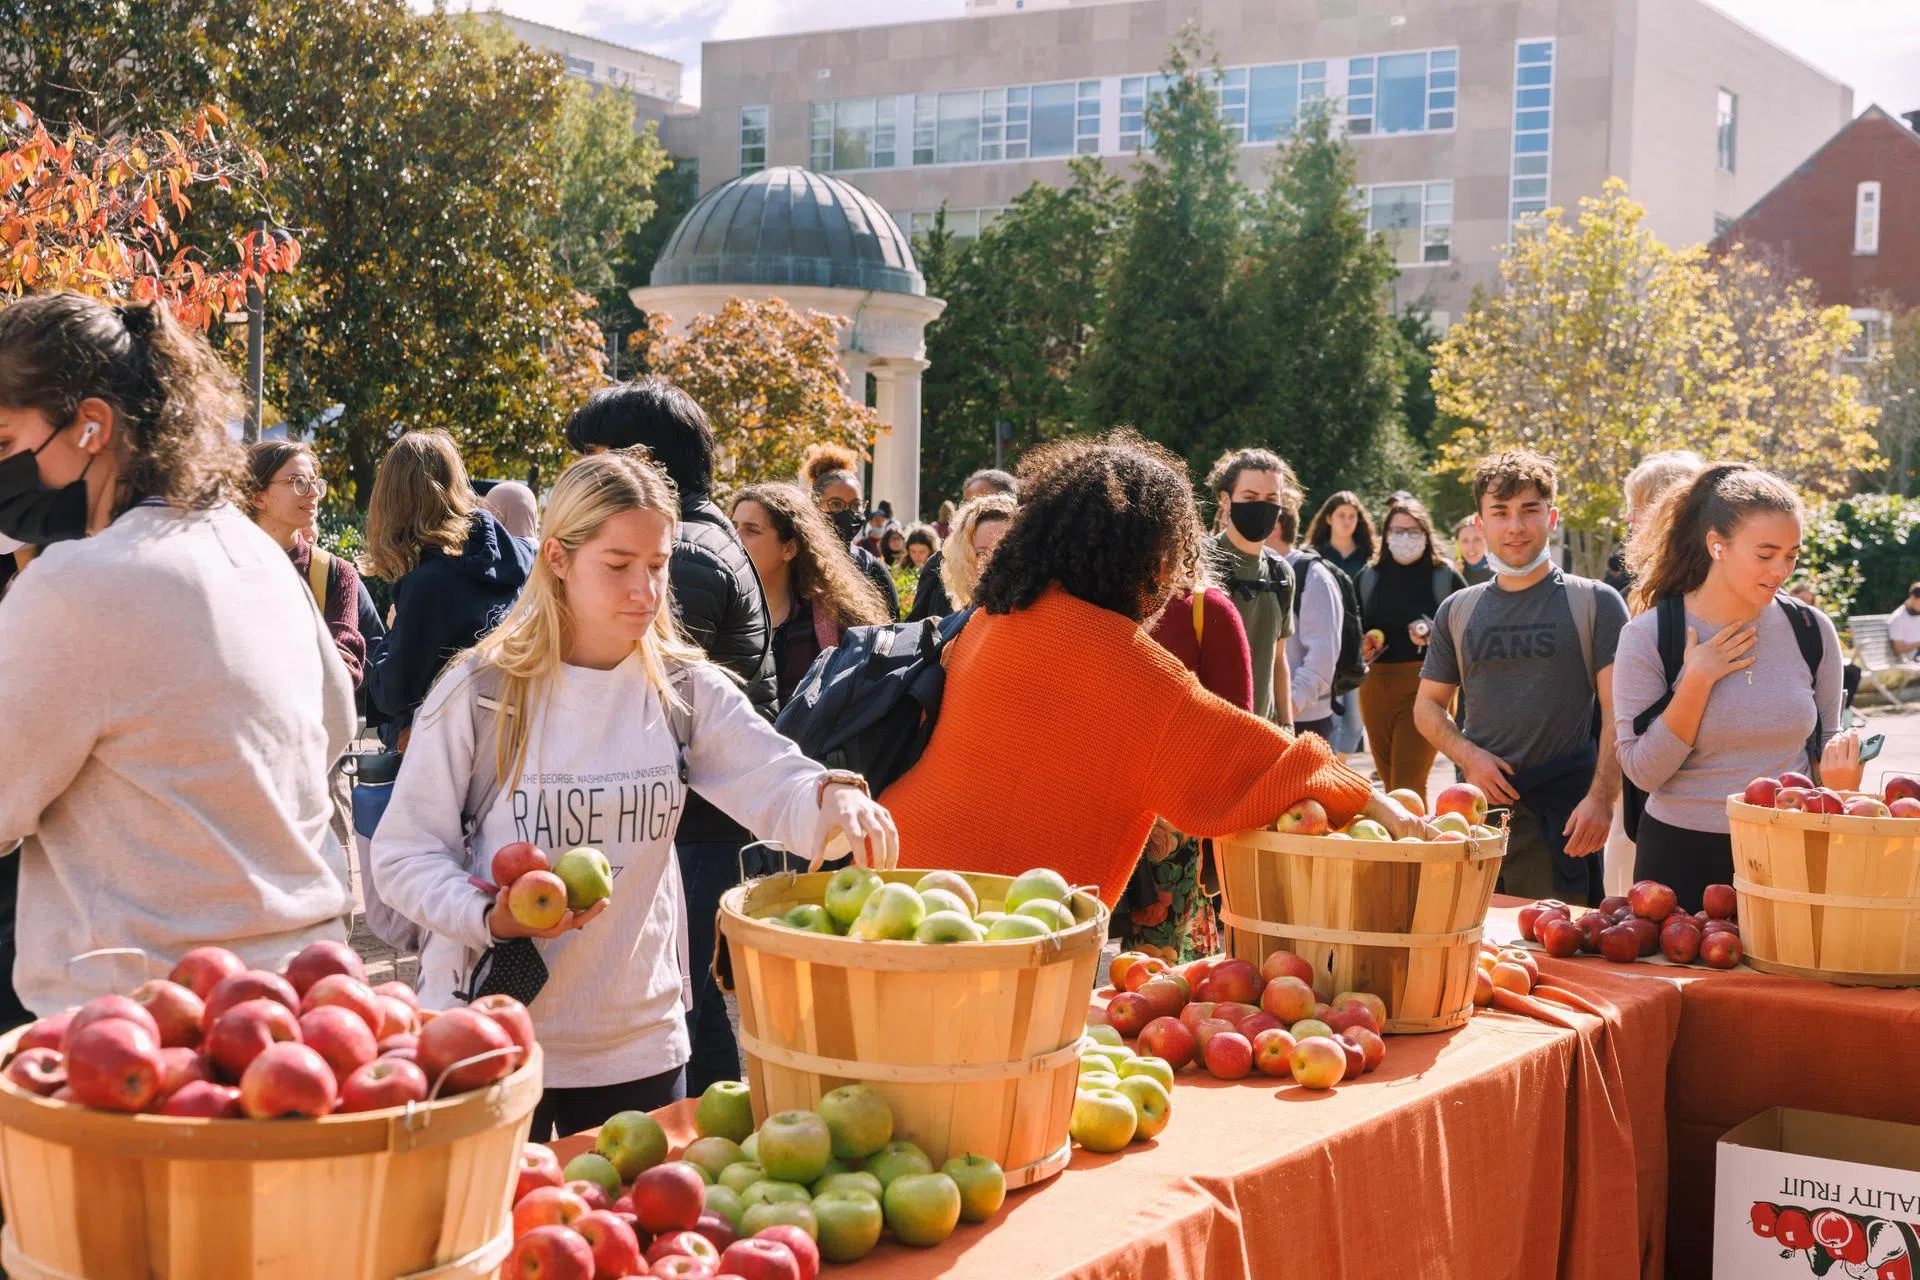 Students grabbing apples at tables in Kogan Plaza